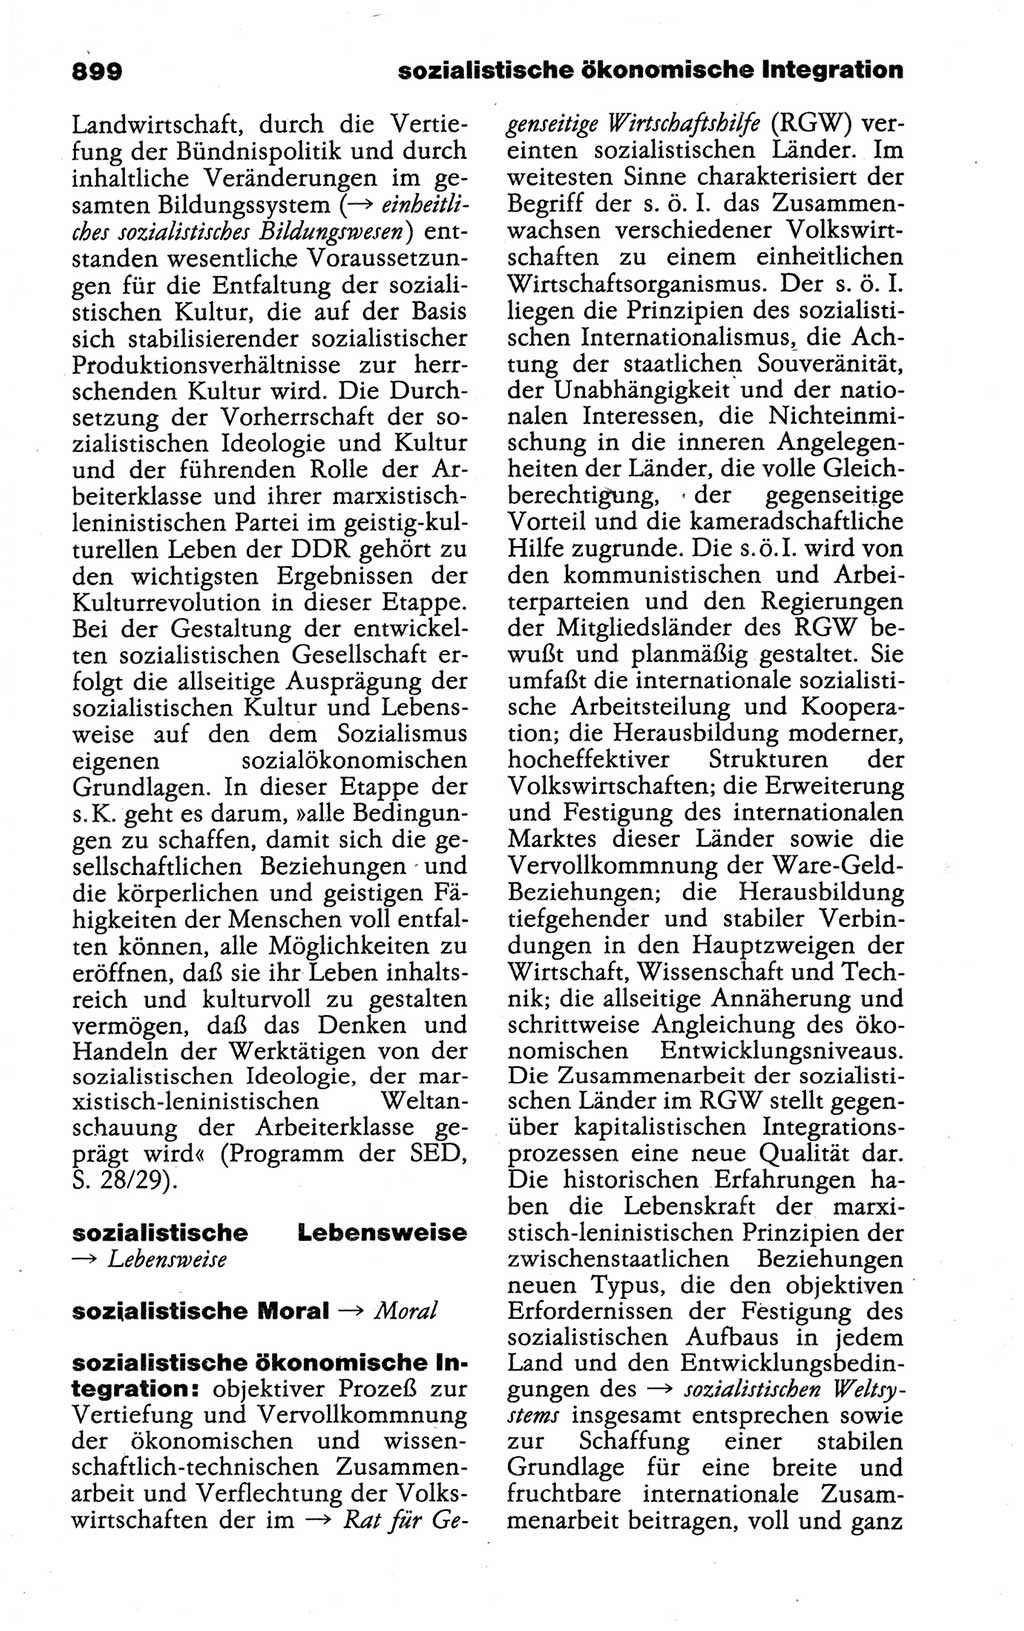 Kleines politisches Wörterbuch [Deutsche Demokratische Republik (DDR)] 1988, Seite 899 (Kl. pol. Wb. DDR 1988, S. 899)